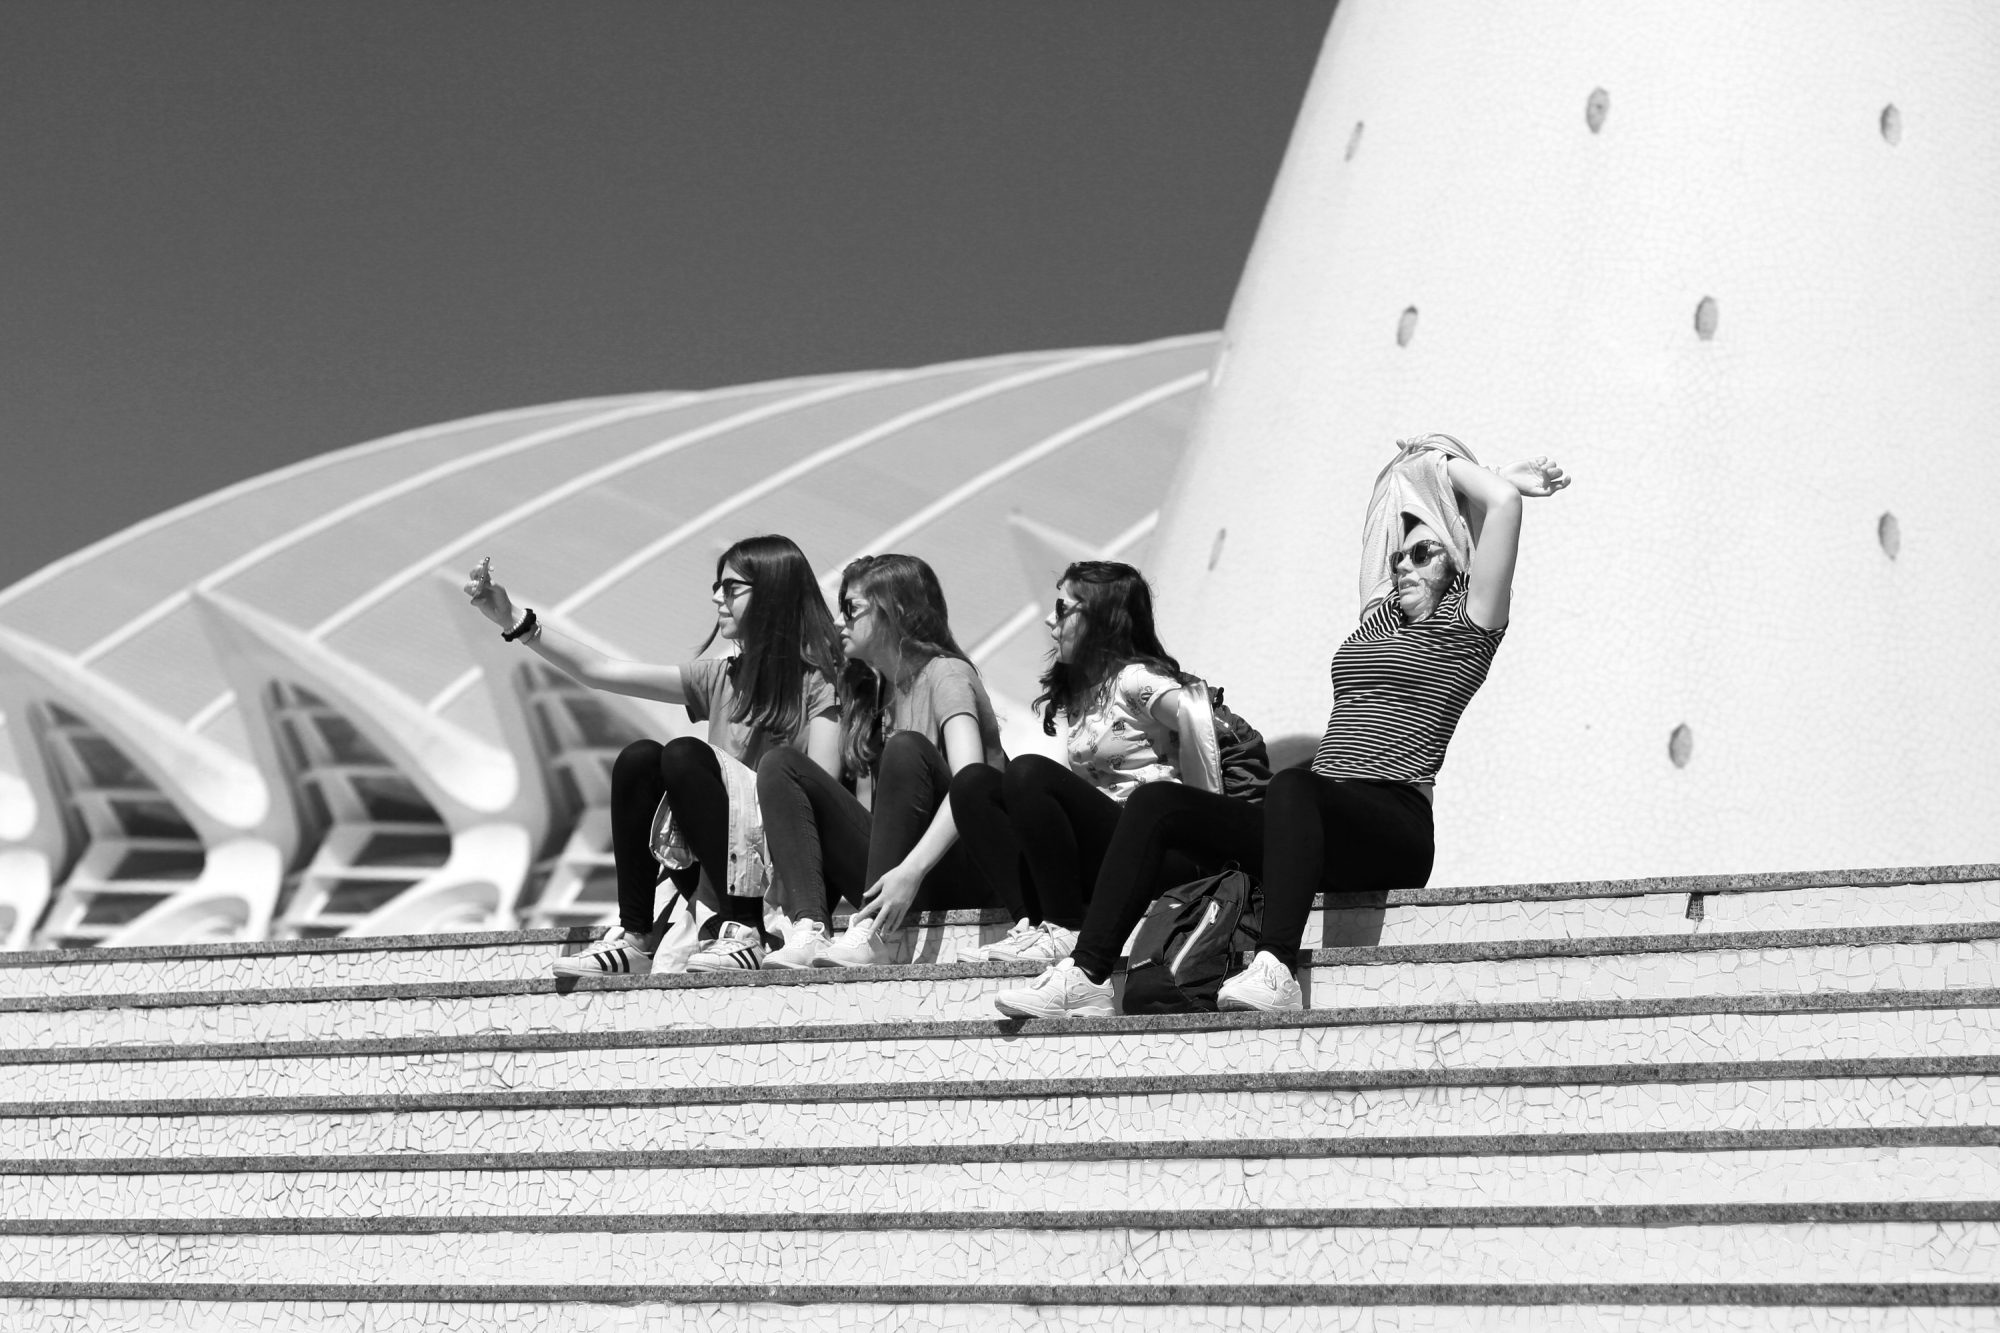 Valencia | Architektur von Santiago Calatrava | Architekturfotografie | Streetfotografie